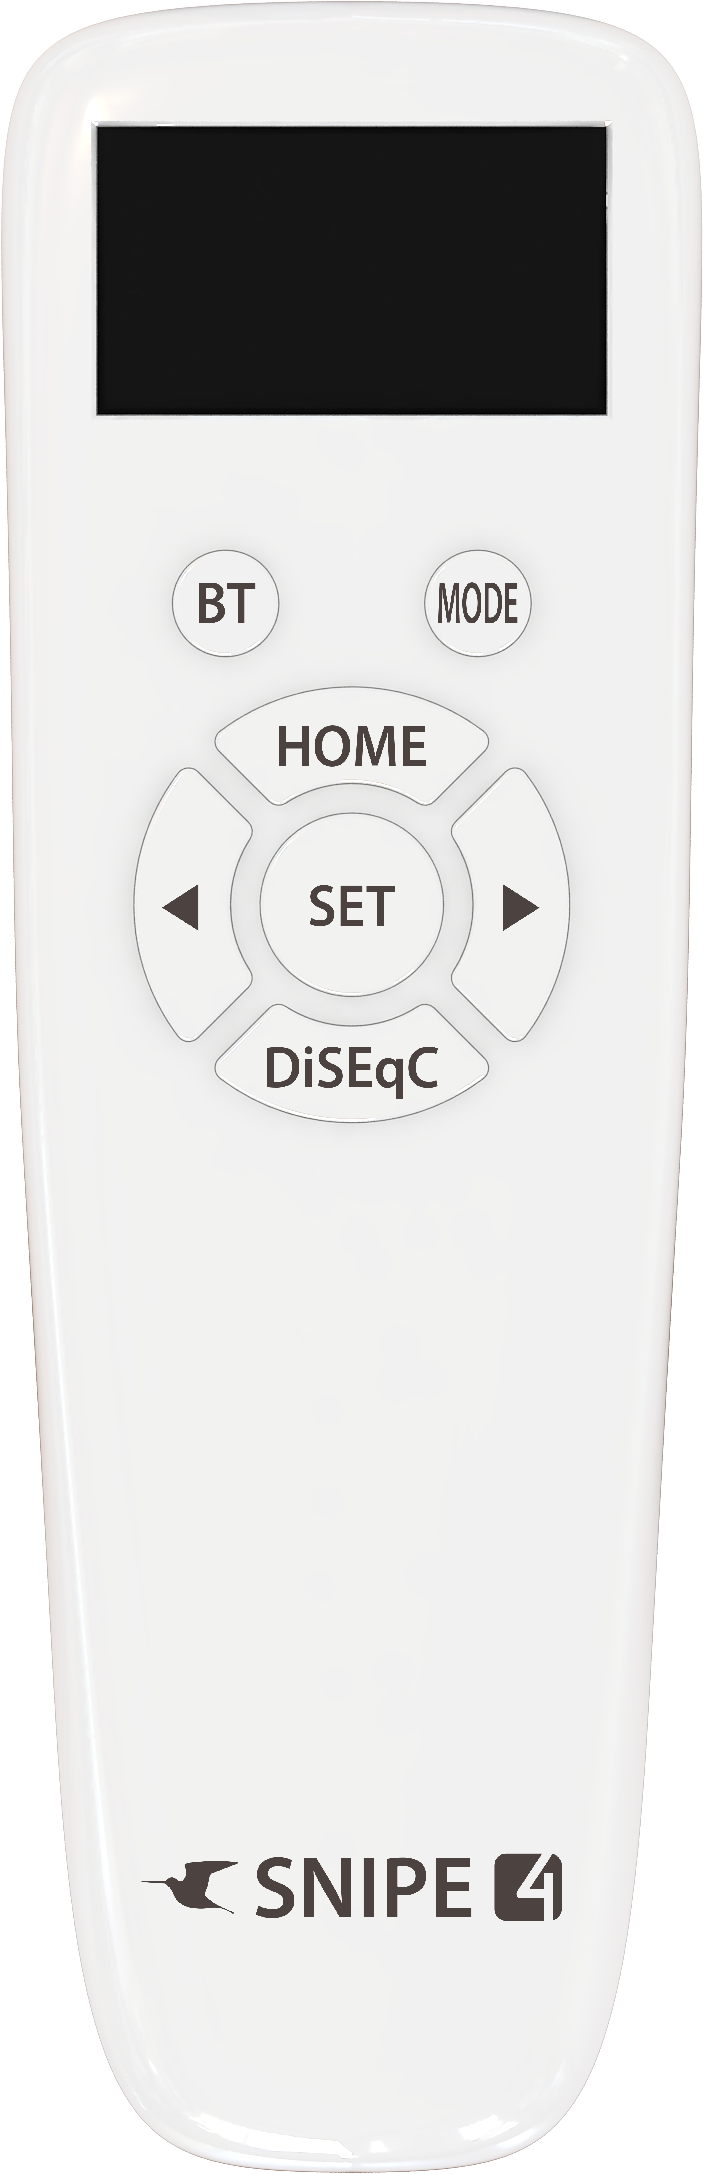 Selfsat SNIPE 4 - Twin - Mit Bluetooth Fernbedienung und iOS / Android Steuerung